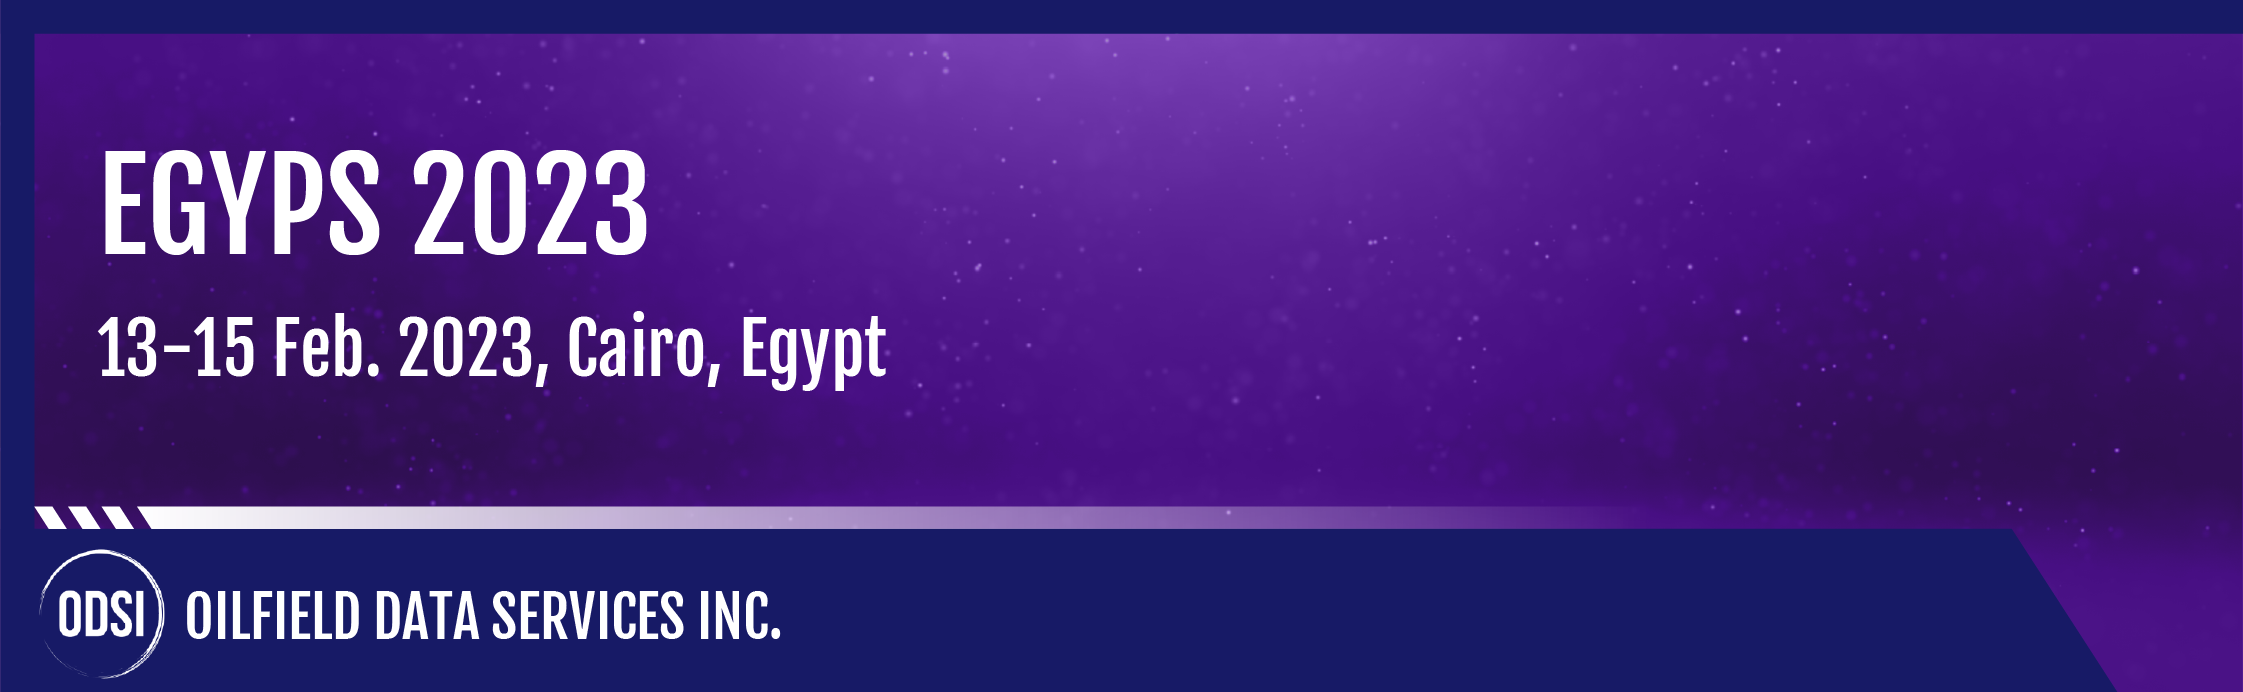 EGYPS 2023